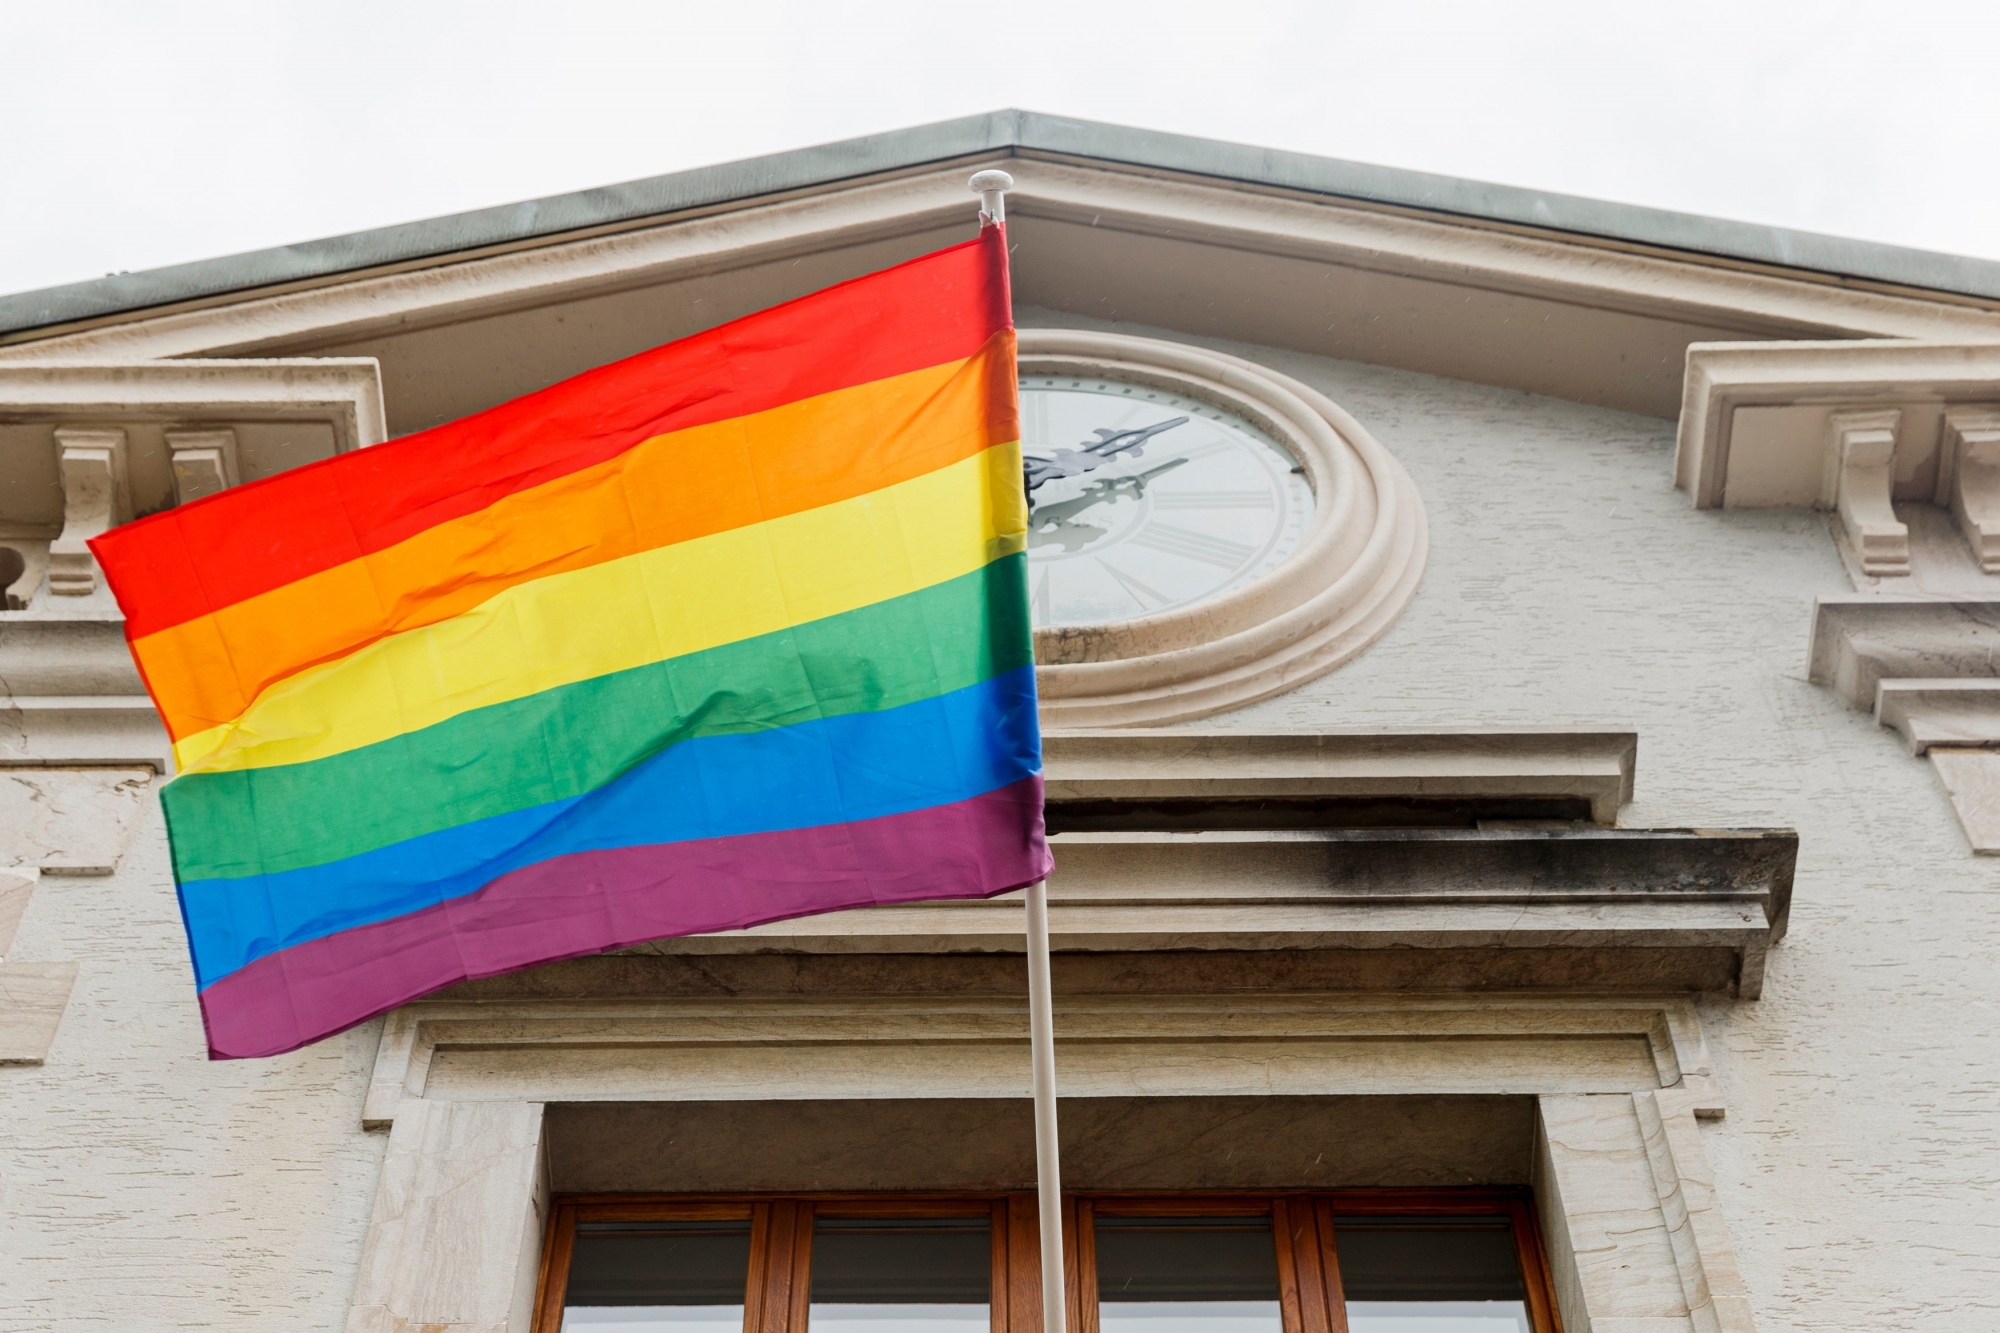 Le Canton a choisi le 17 mai pour communiquer, date de la Journée mondiale contre l'homophobie. Des actions symboliques ont été menées un peu partout dans la région, comme ici à Gland, où le drapeau arc-en-ciel a été hissé sur la Maison de commune.